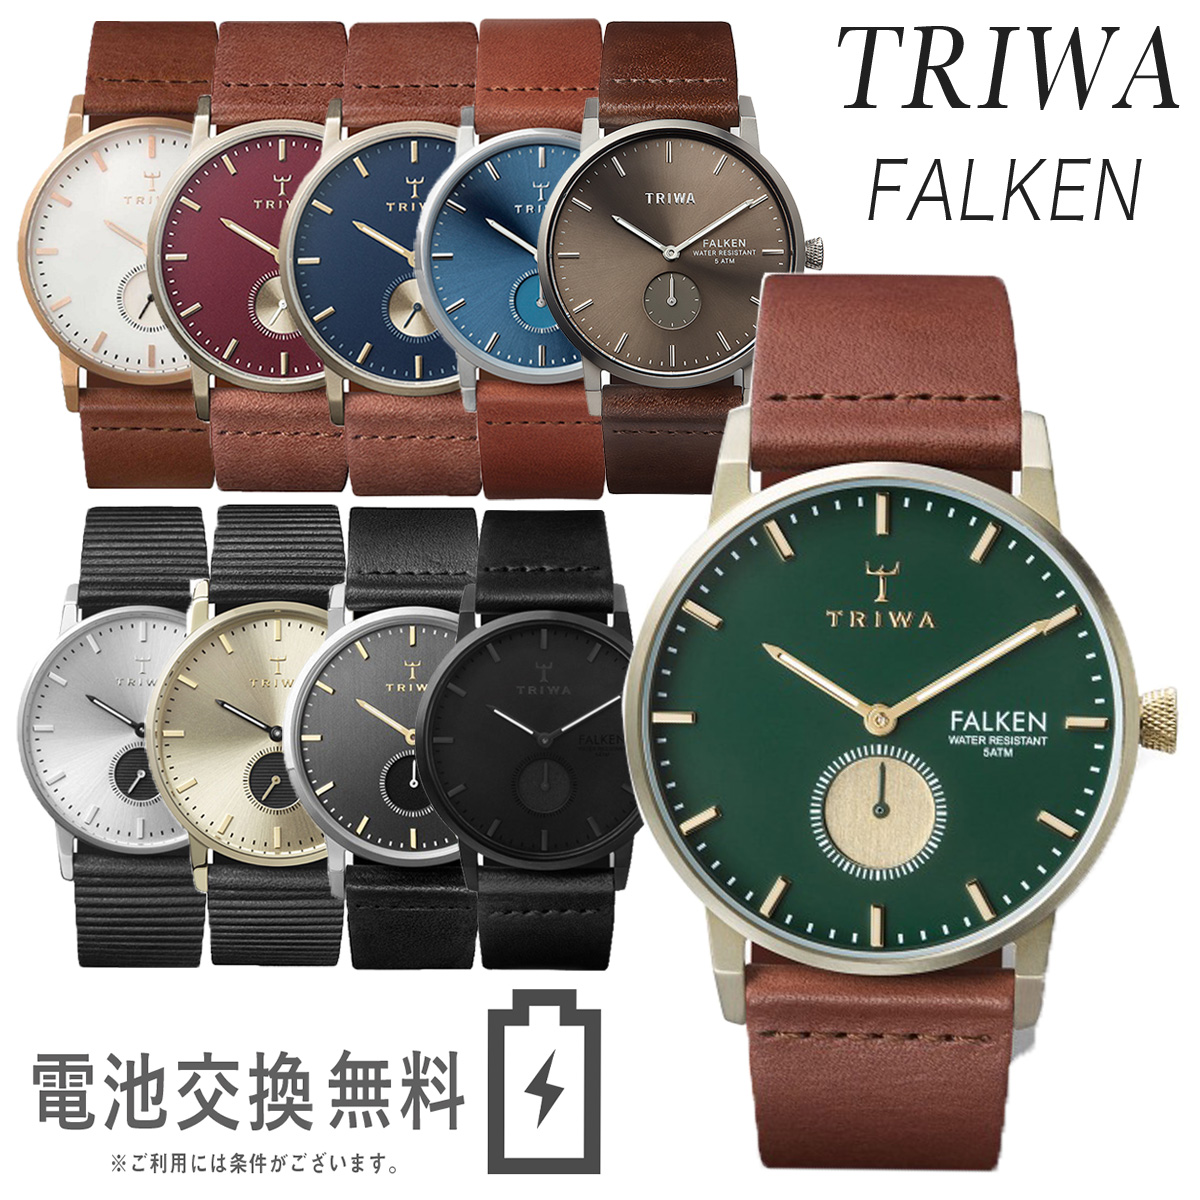 トリワの腕時計,ファルケン